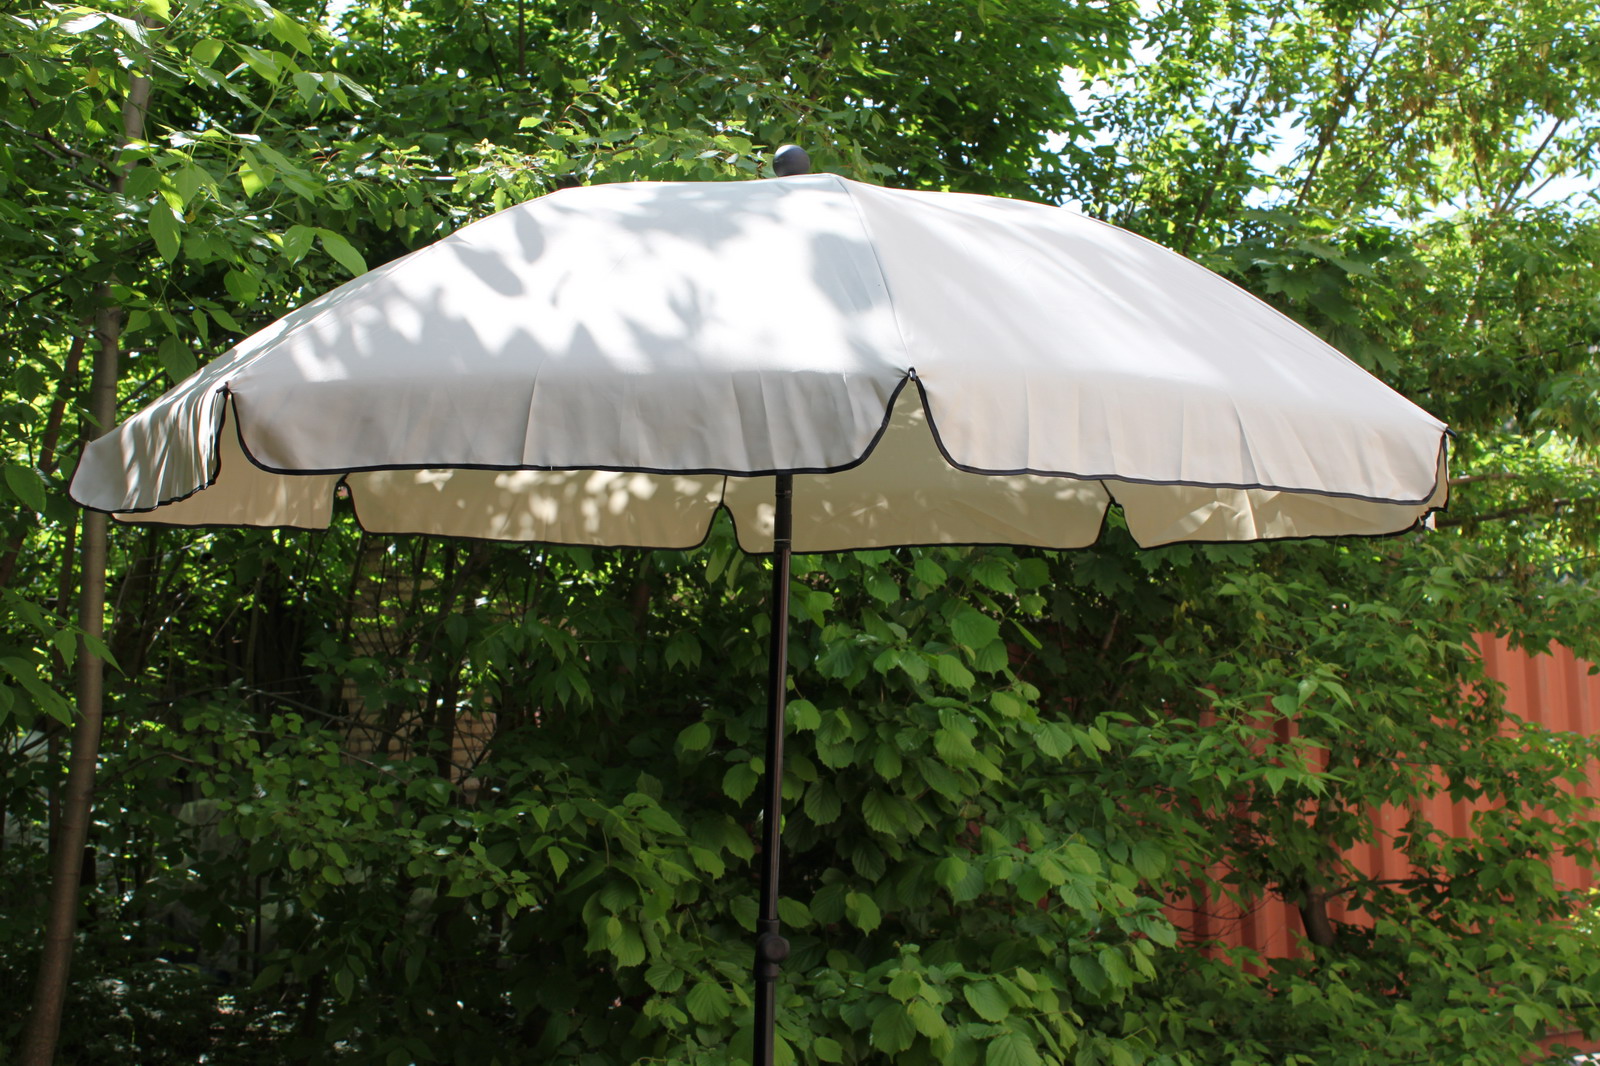 Зонт садовый Green Glade 1282